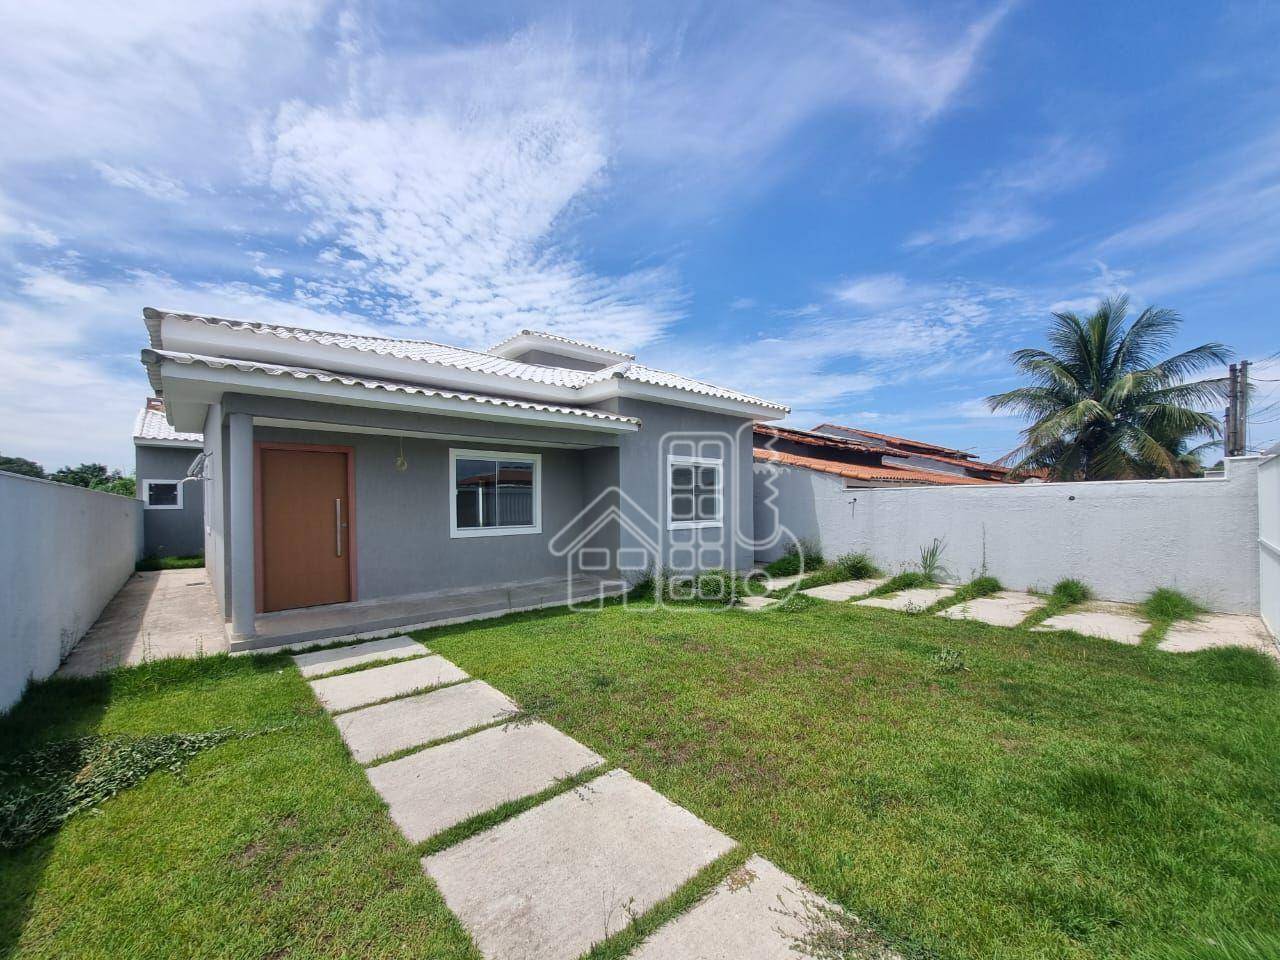 Casa com 3 dormitórios à venda, 120 m² por R$ 650.000,01 - Jardim Atlântico Central (Itaipuaçu) - Maricá/RJ